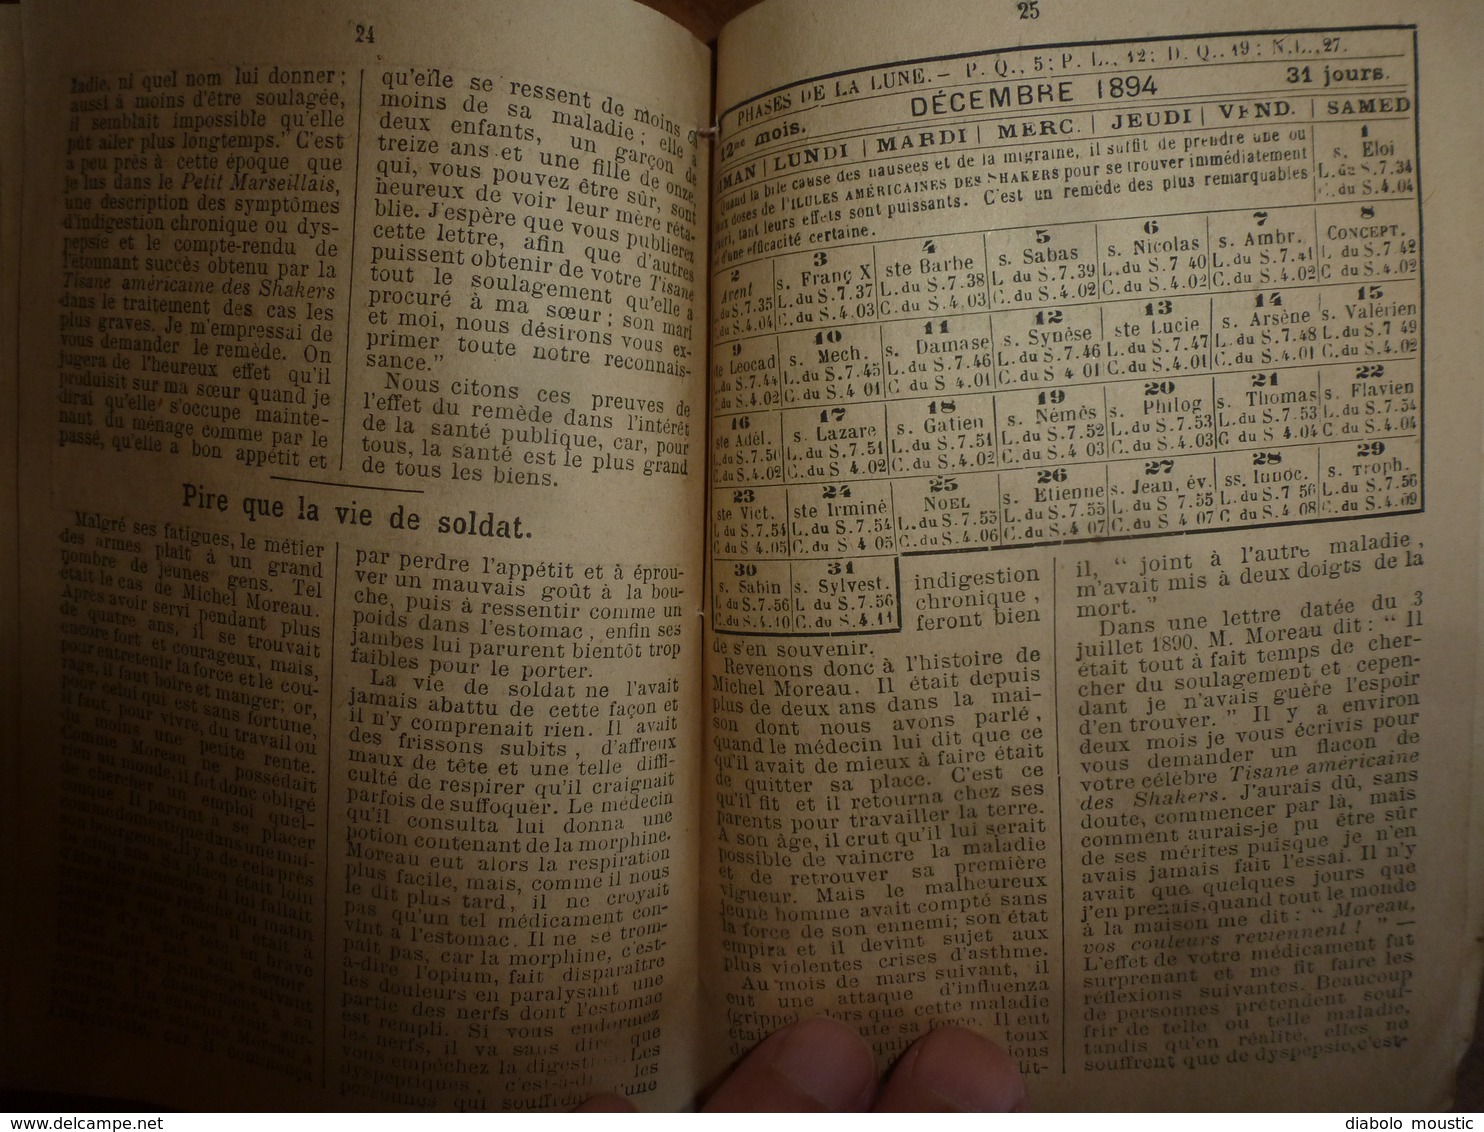 1893 : SHAKERS - Revue : Publication paraissant à LILLE ( Pilules,Tisanes,etc ) à la Pharmacie FANYAU de LILLE